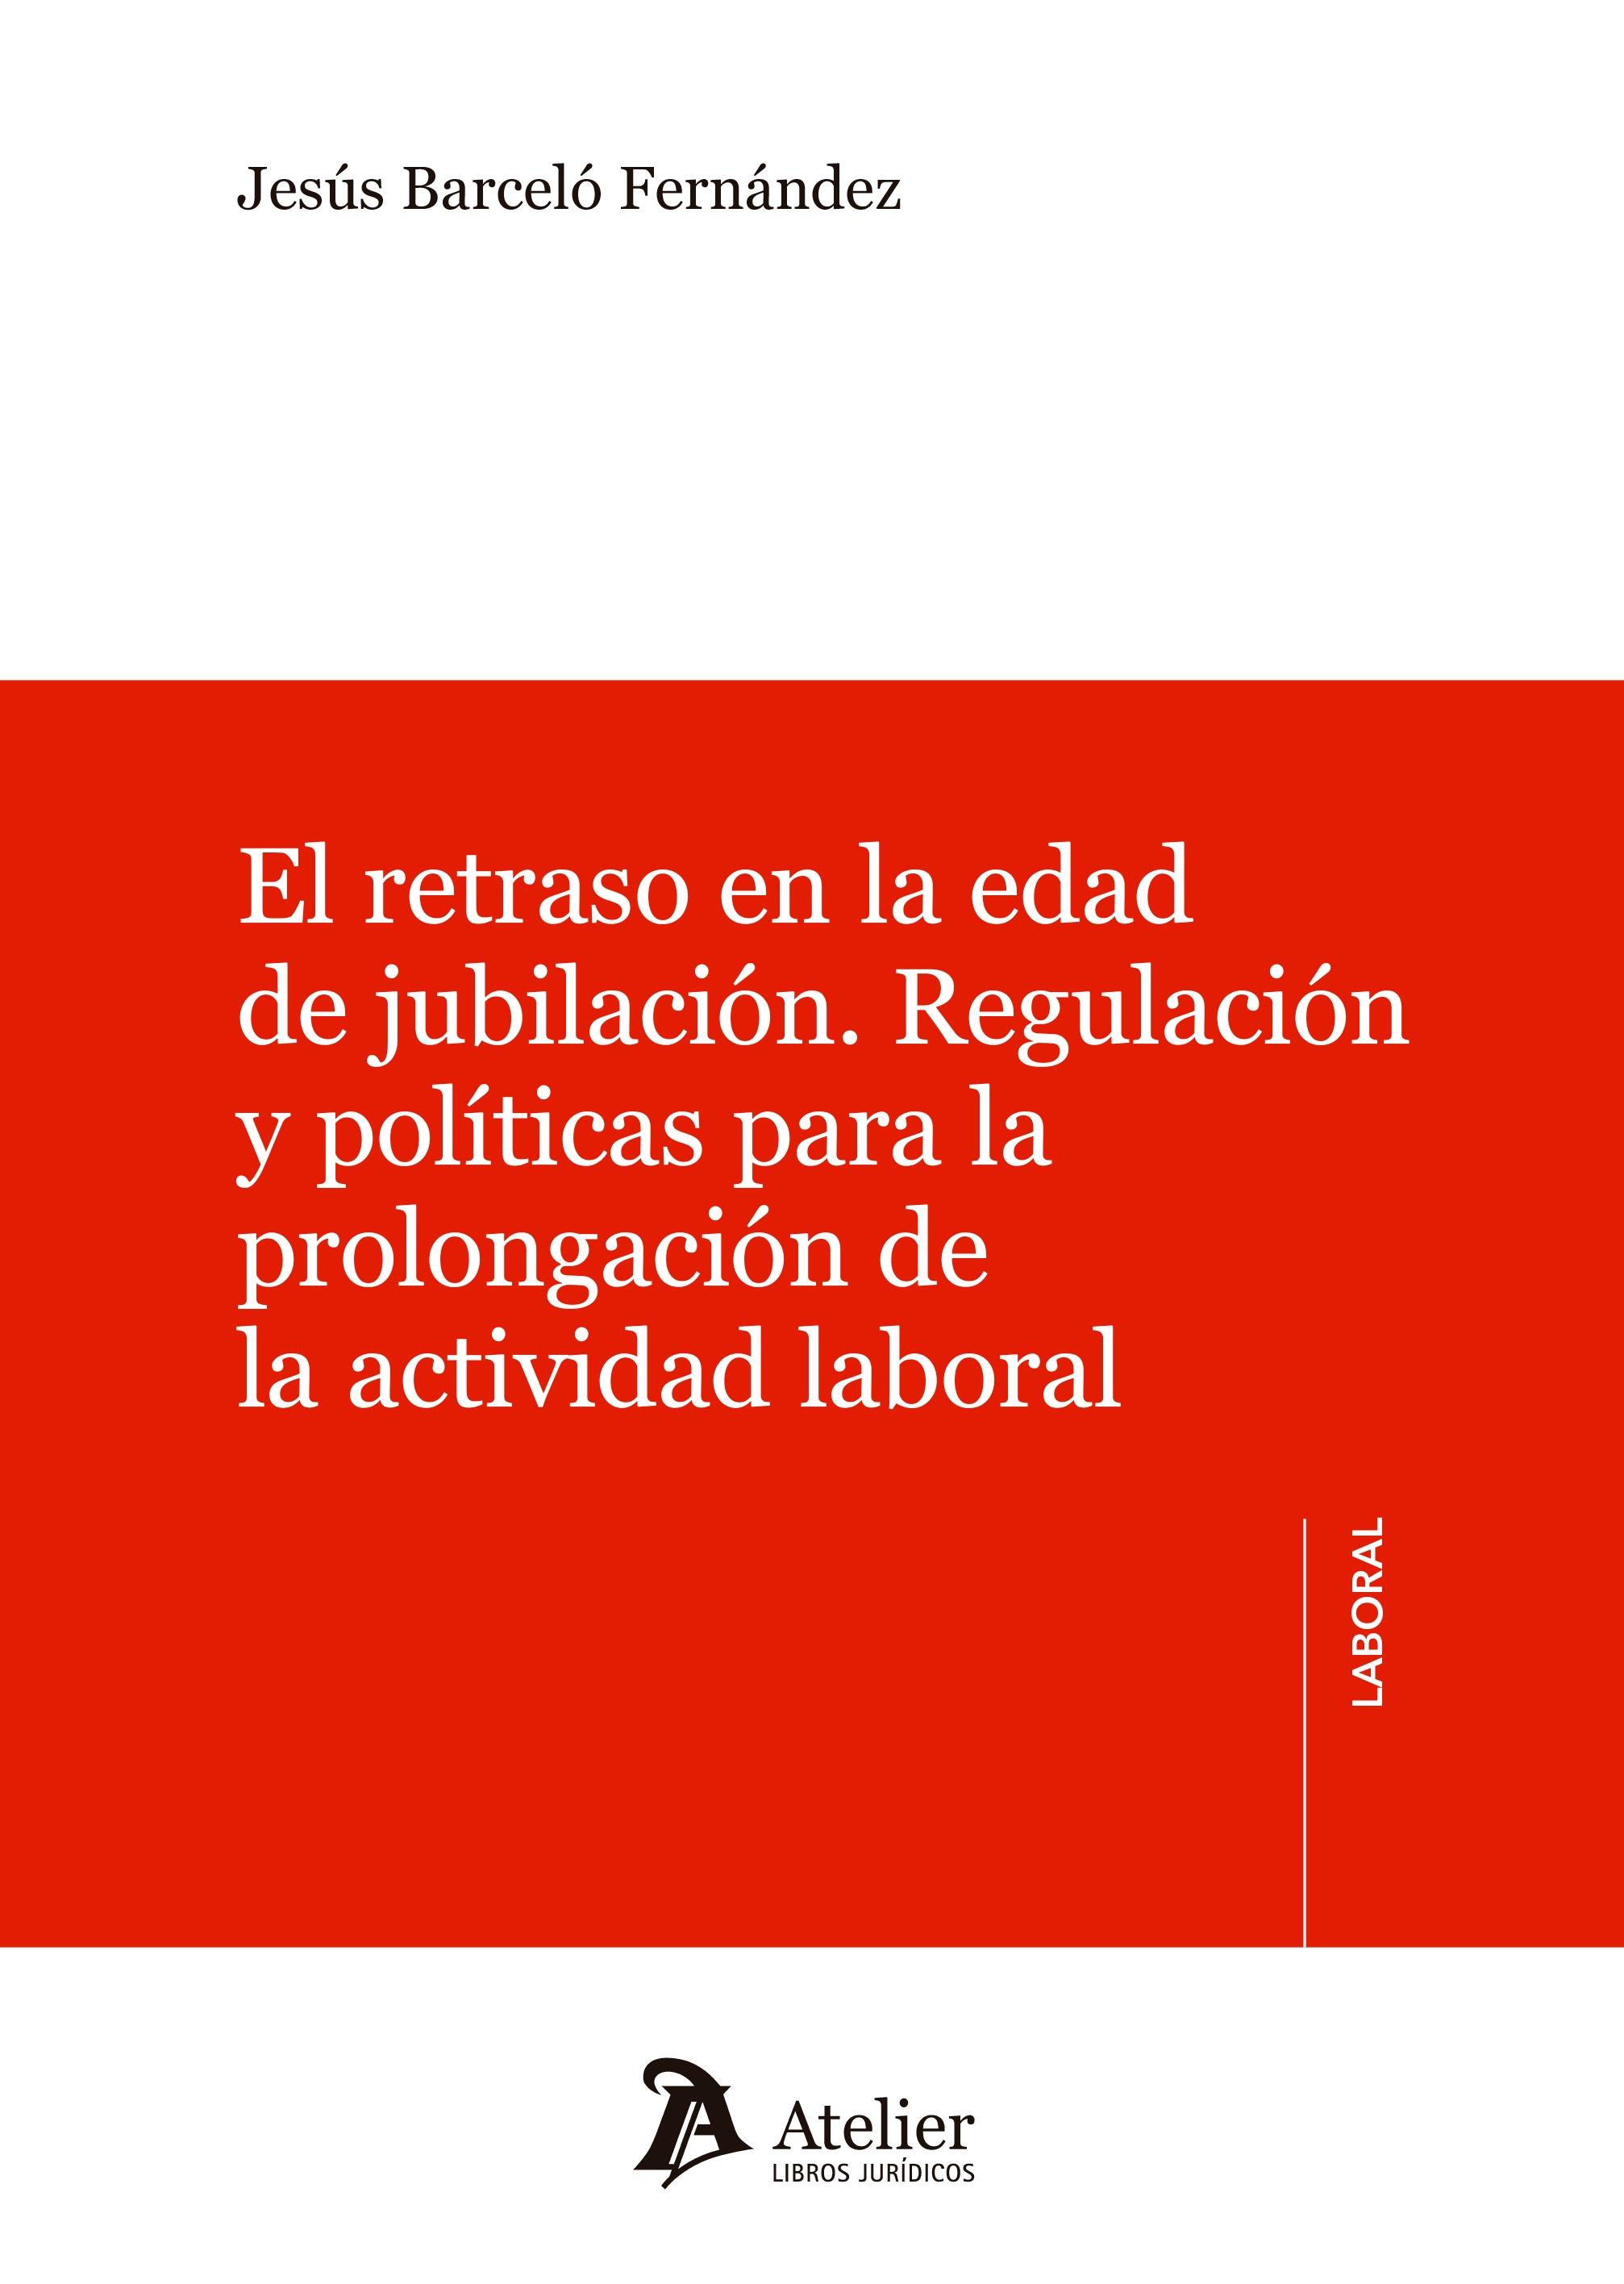 El Retraso en la Edad de Jubilación "Regulación y Políticas para la Prolongación de la Actividad Laboral"